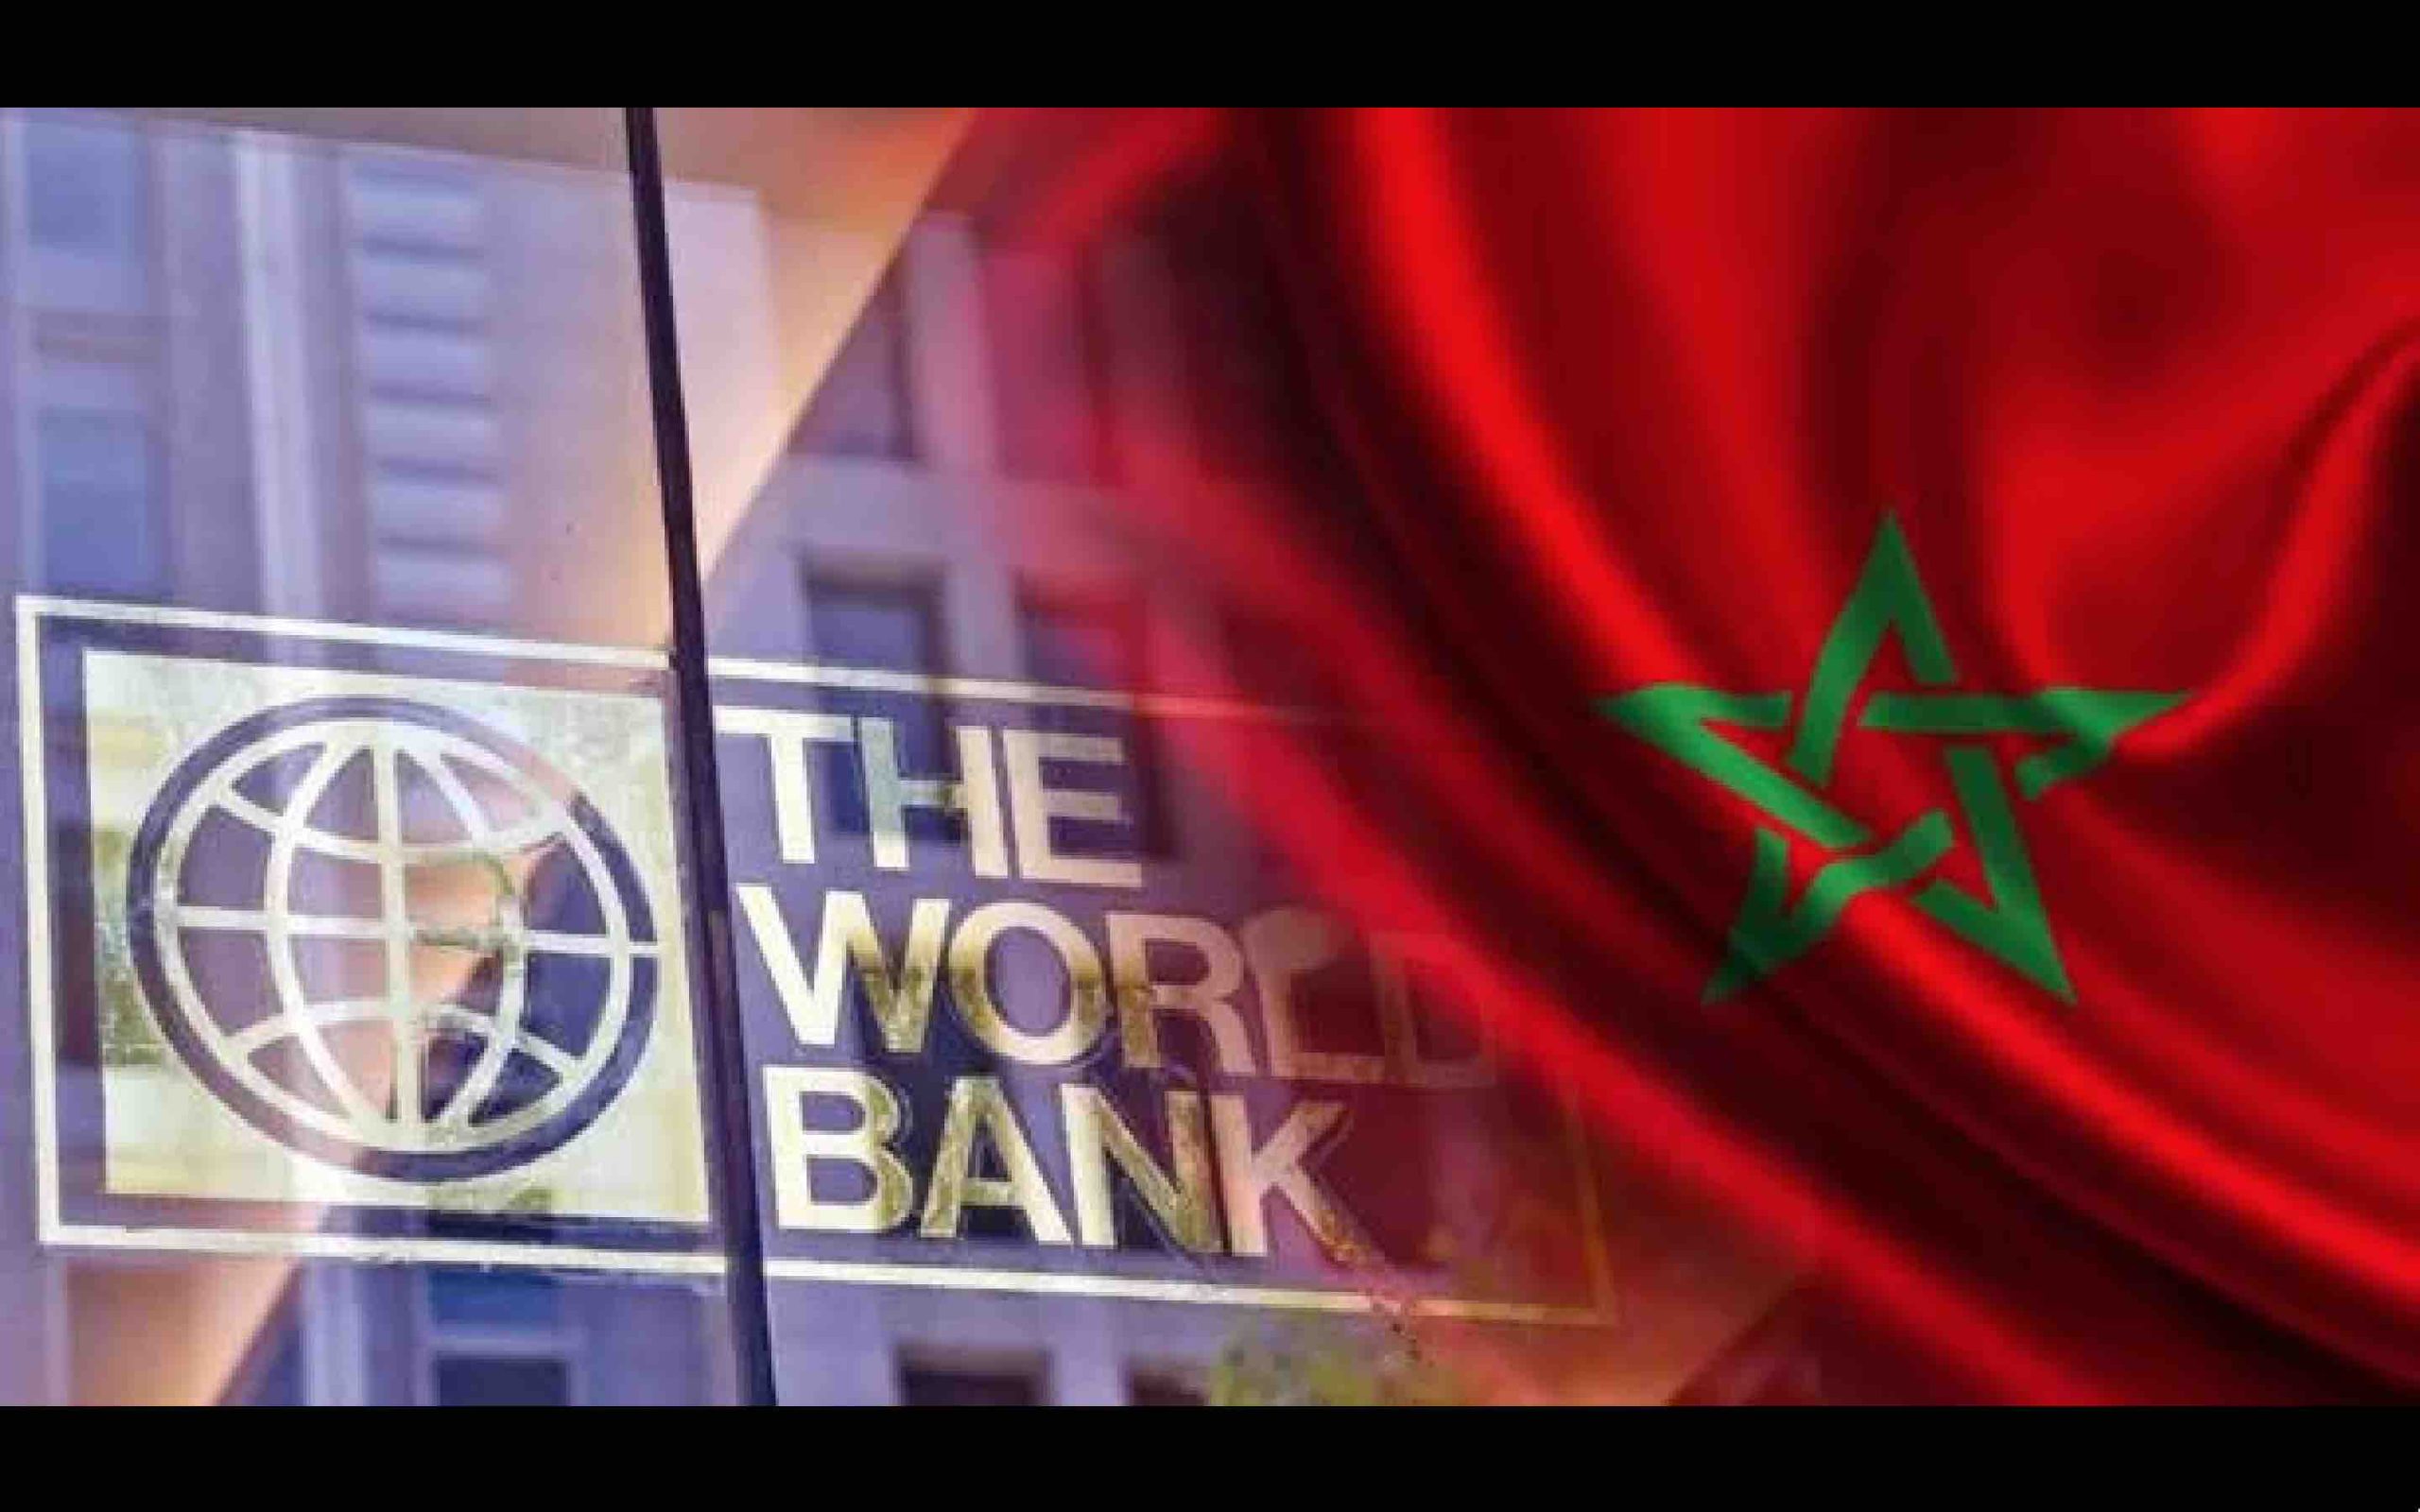 La banque mondiale BM Maroc The World Bank WB Morocco